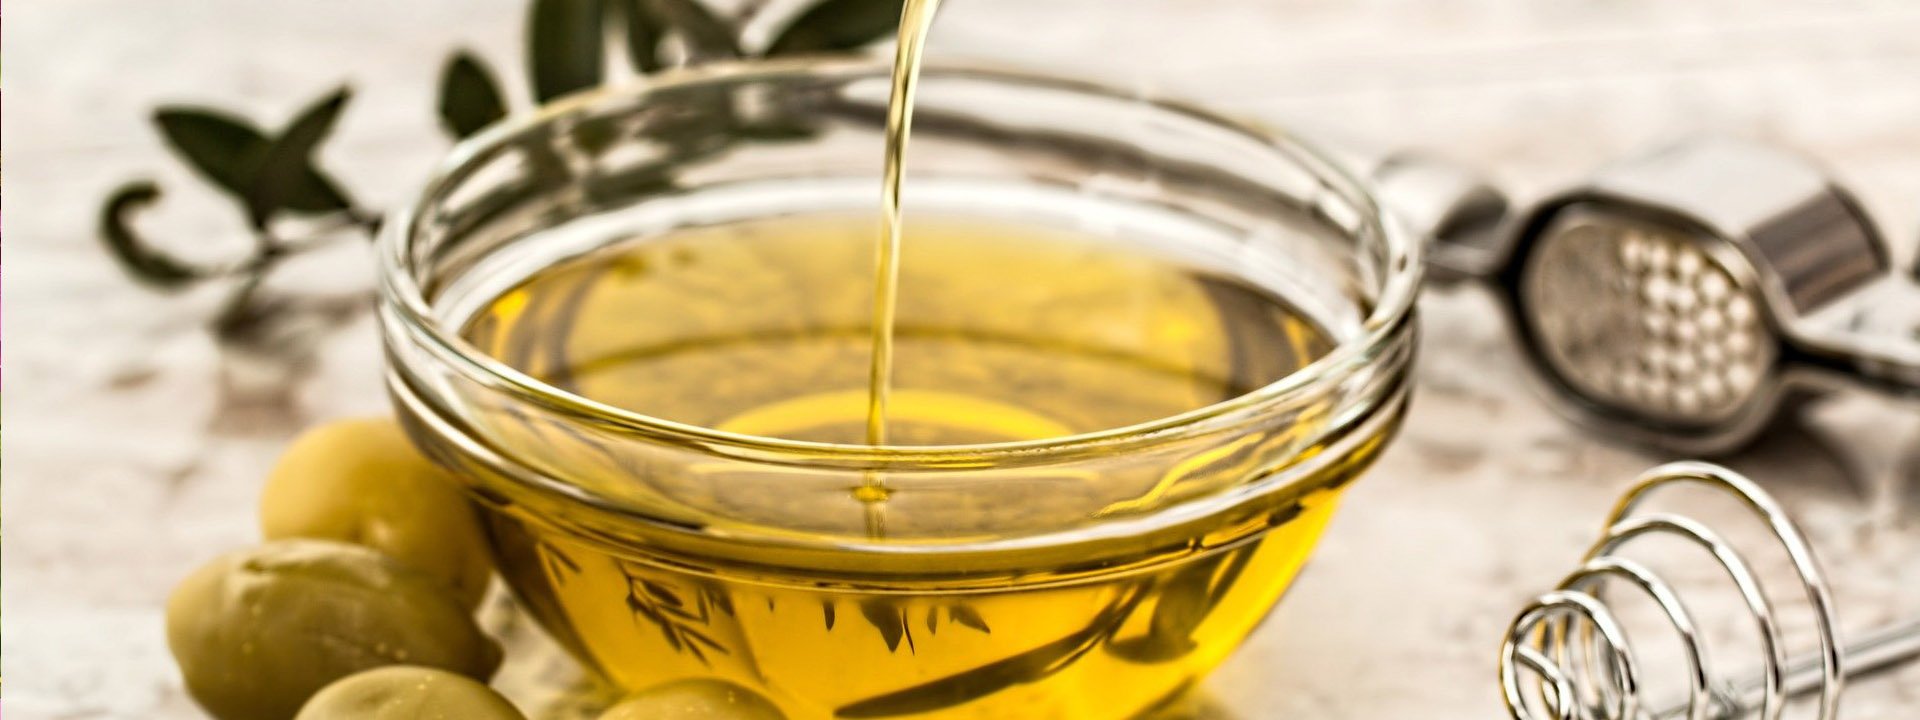 Comment bien choisir son huile d’olive